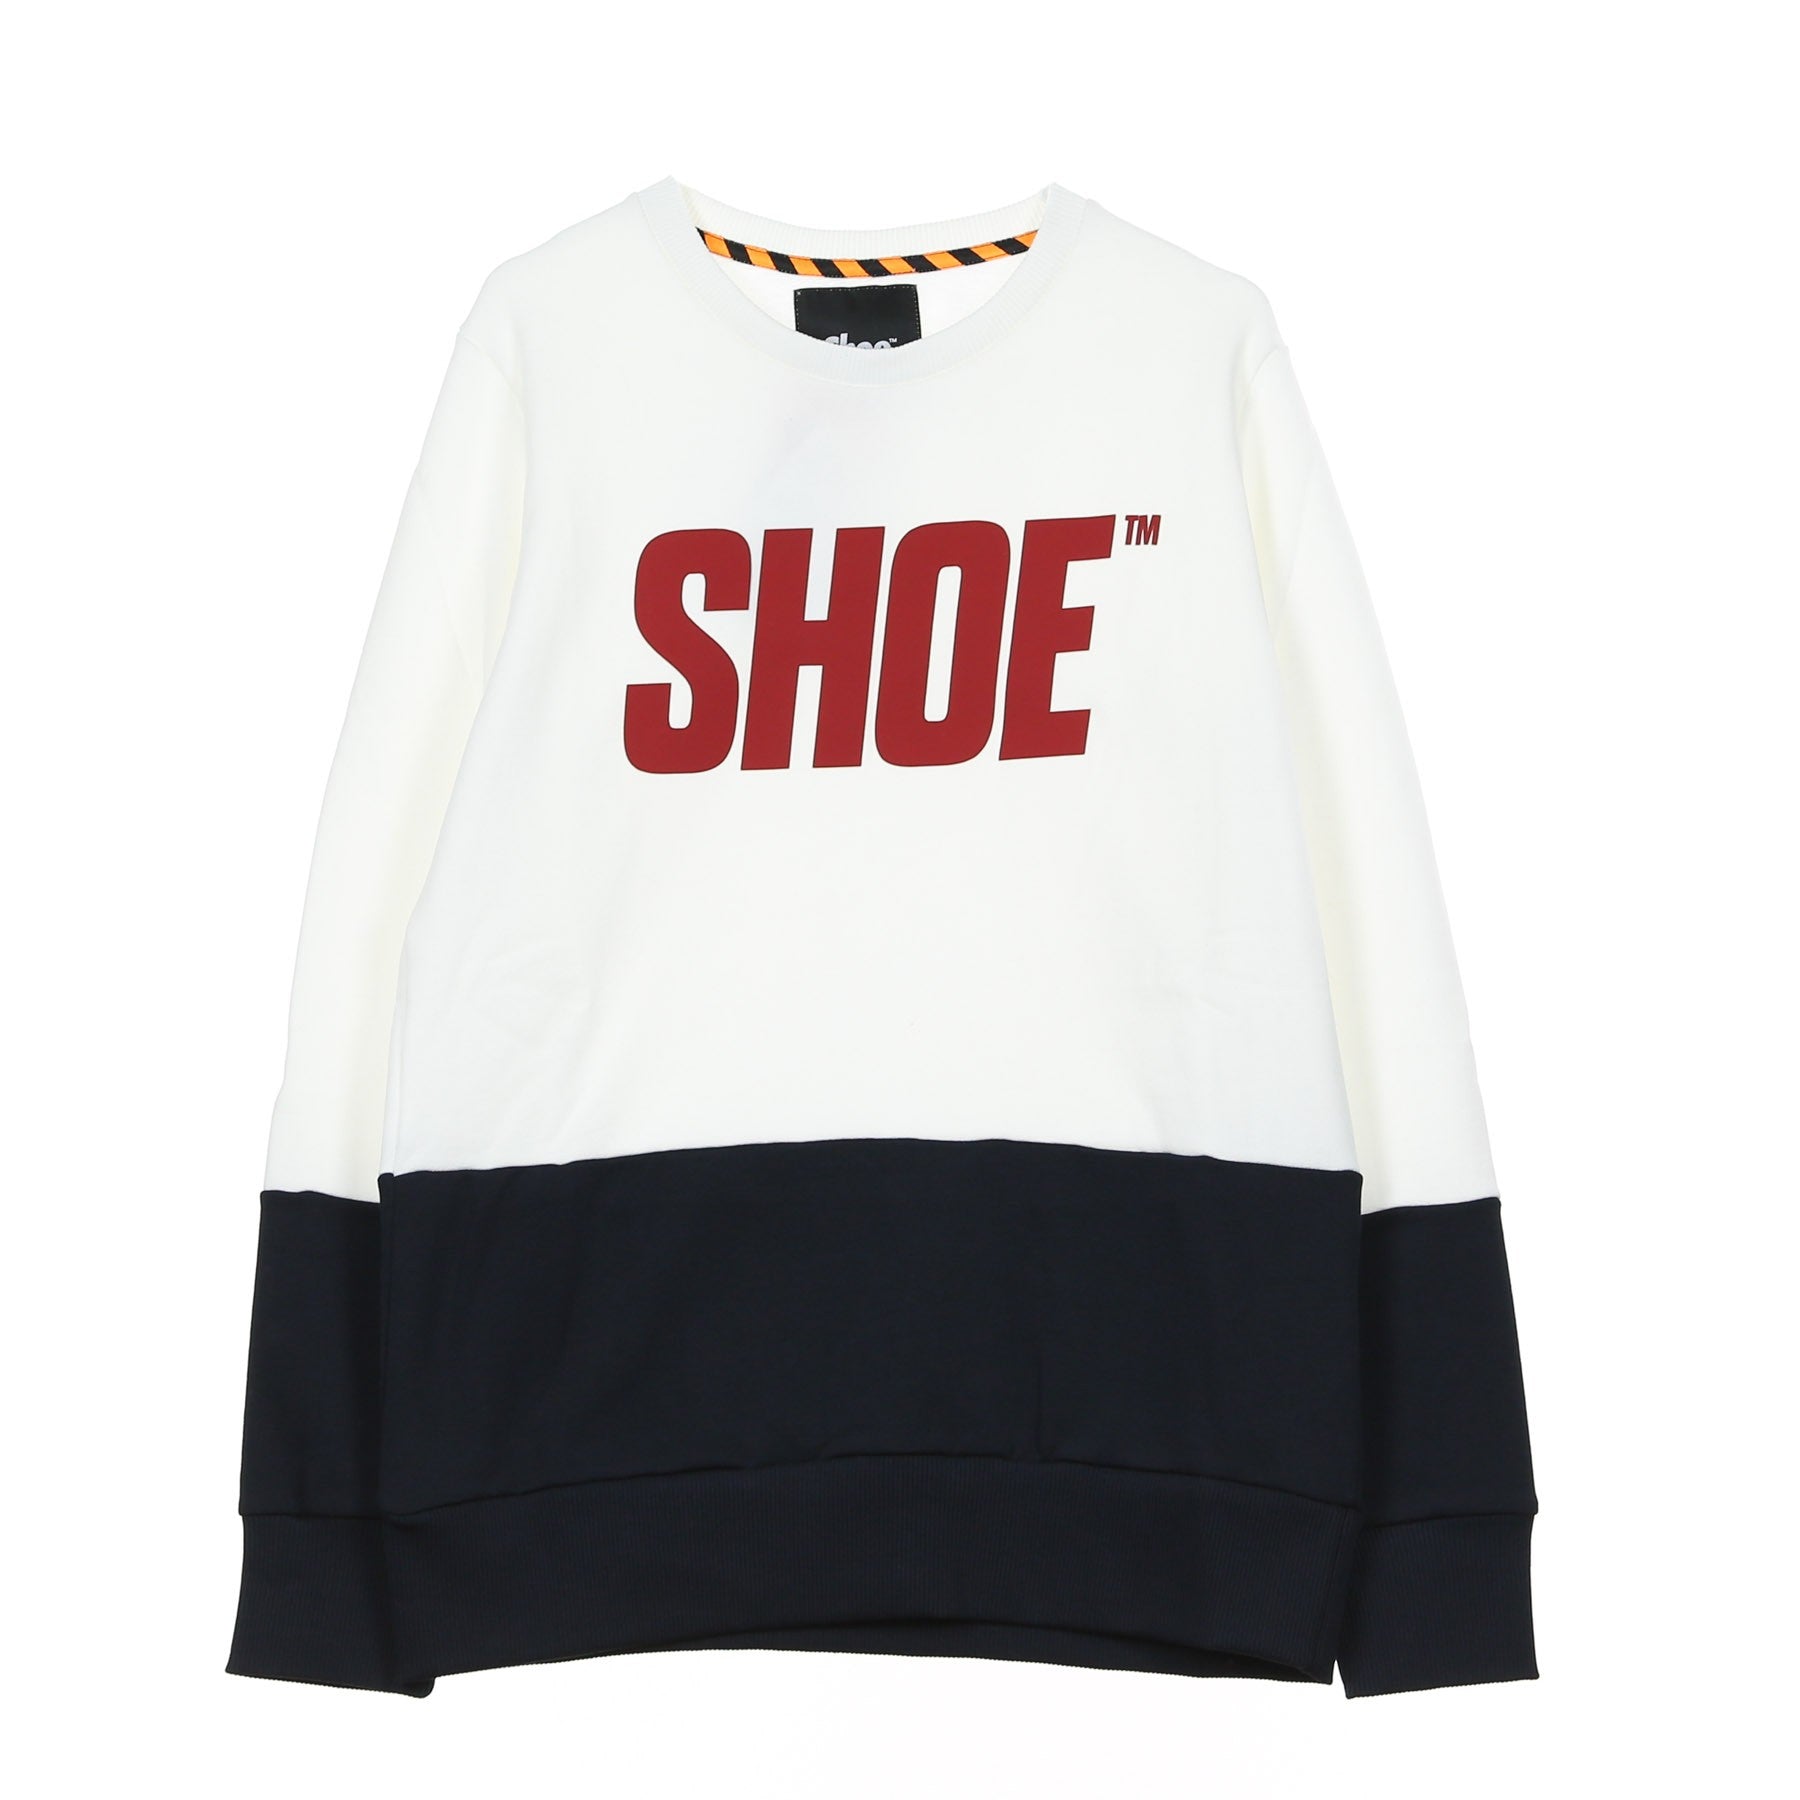 Shoeshine, Felpa Girocollo Uomo Bicolor Printed Sweatshirt, White